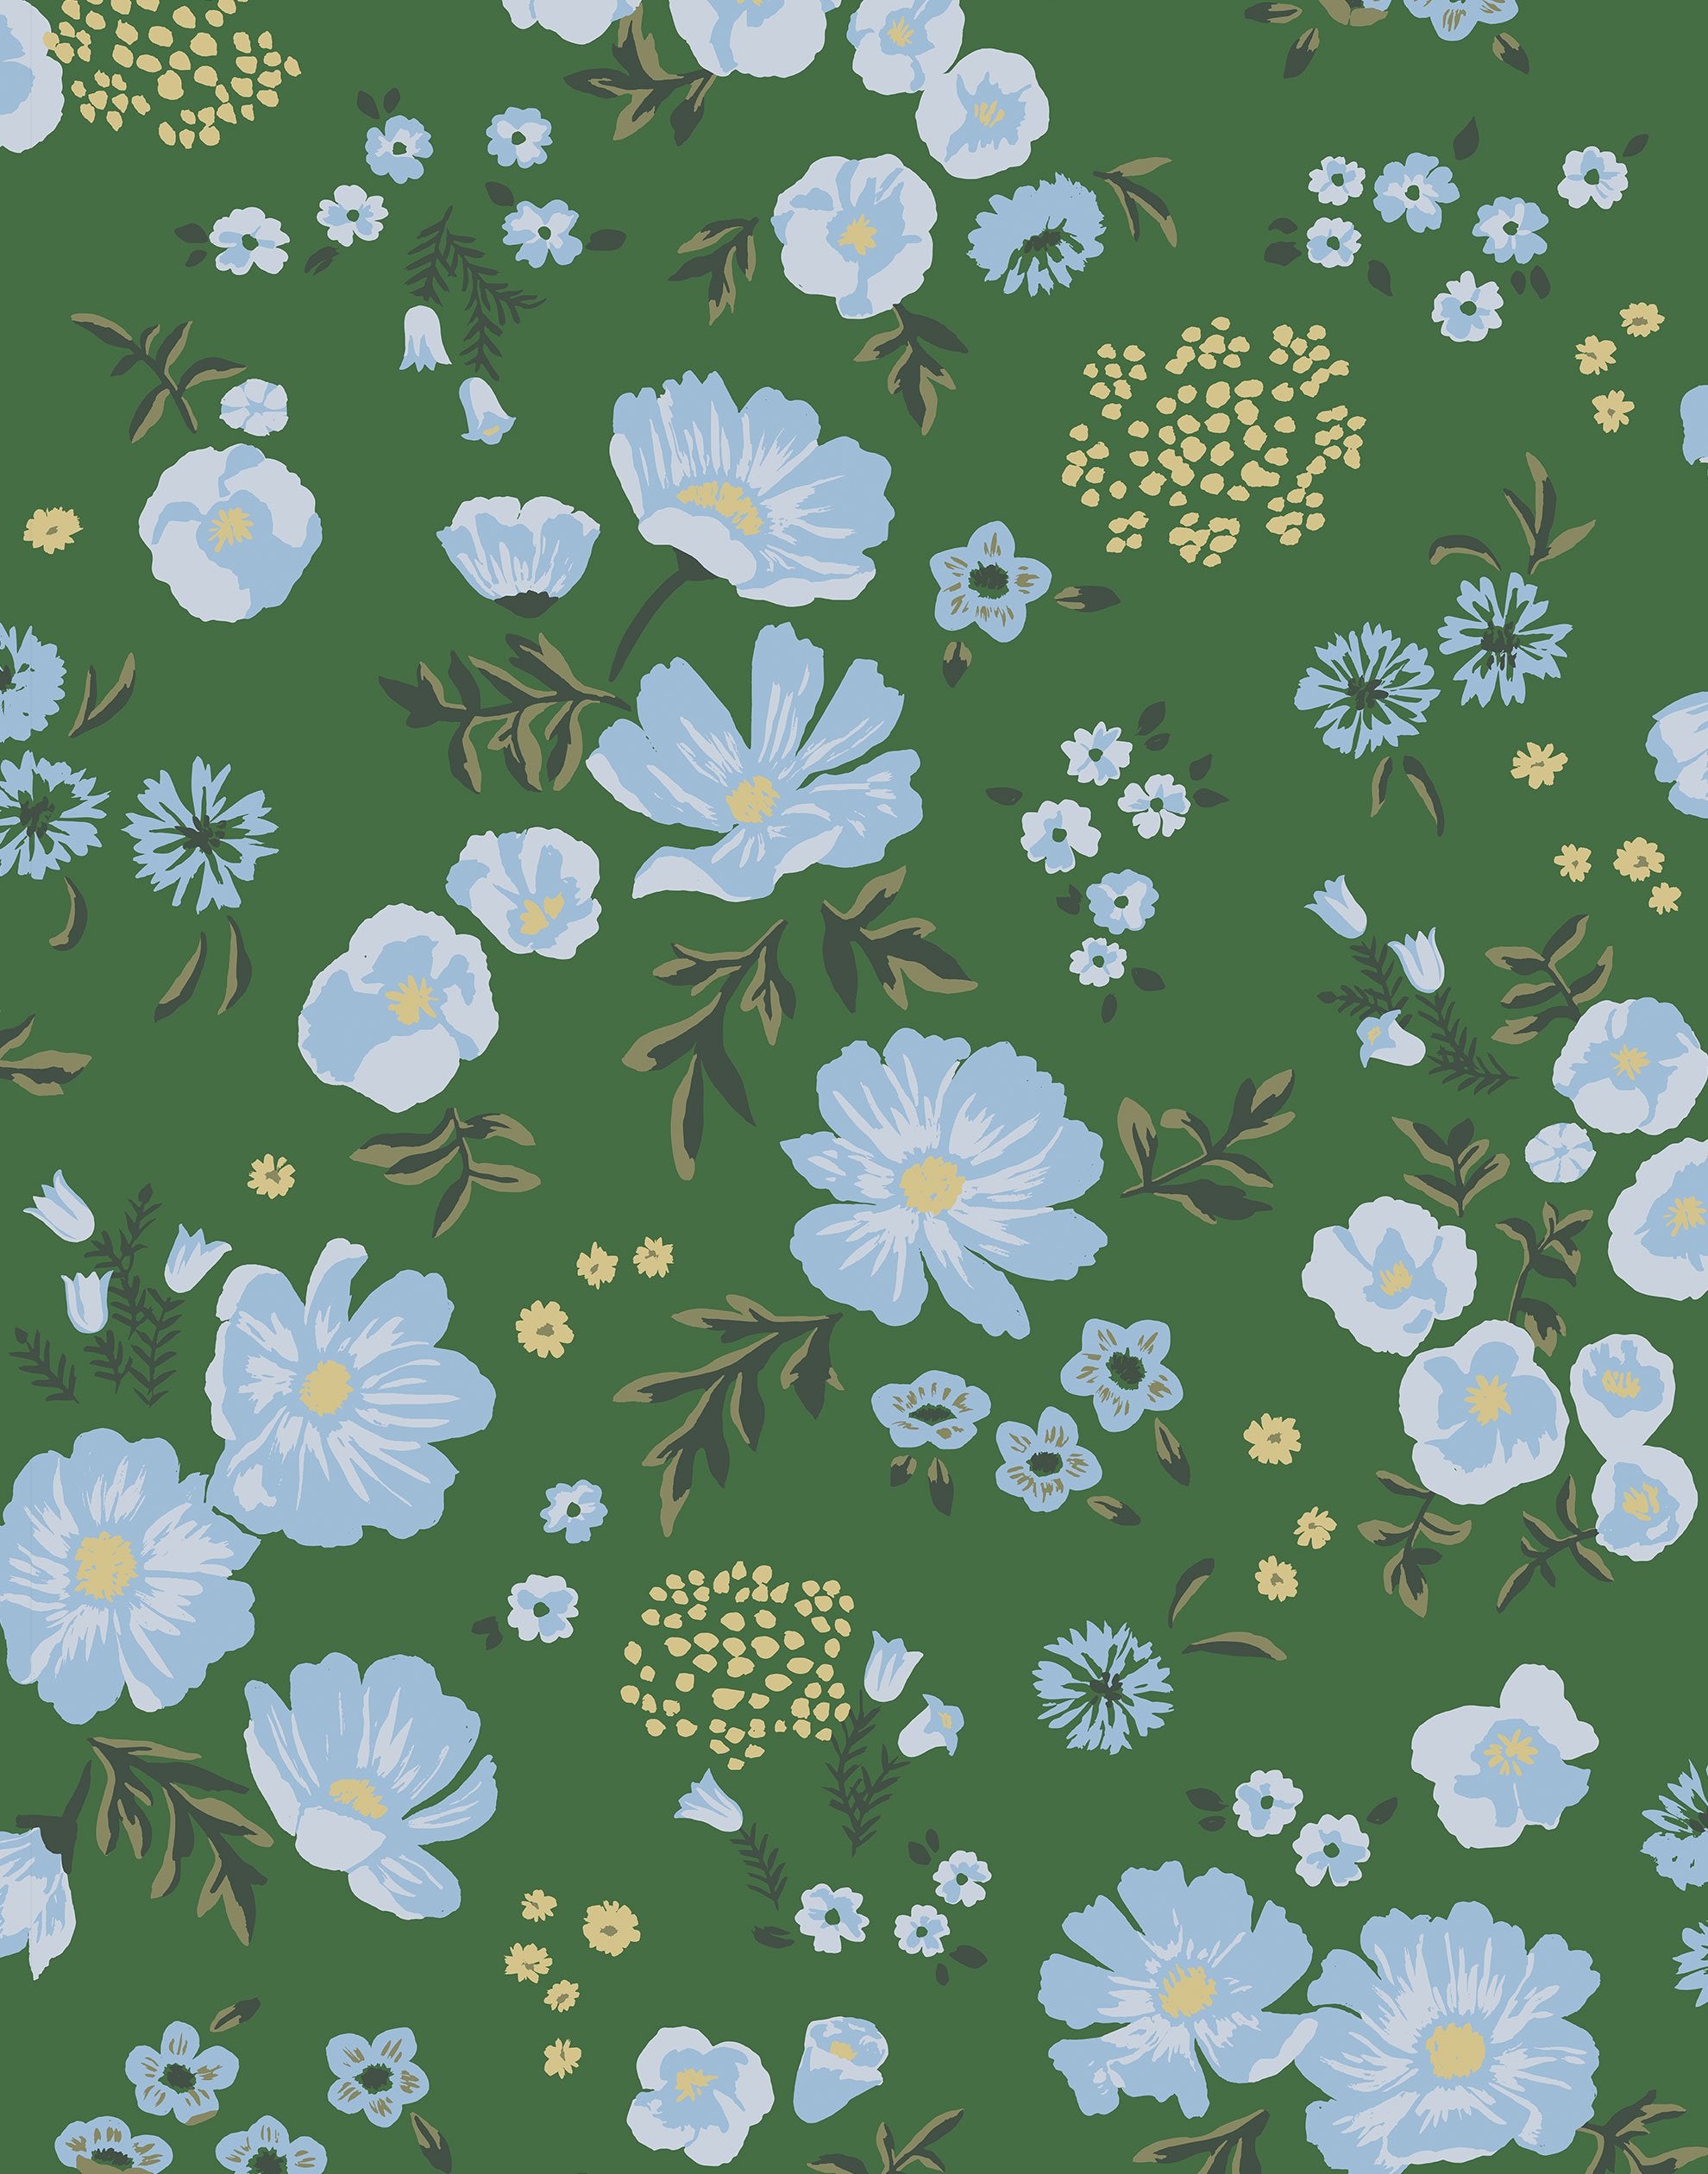 Floral Wallpaper & Garden Wall Murals | Hygge & West